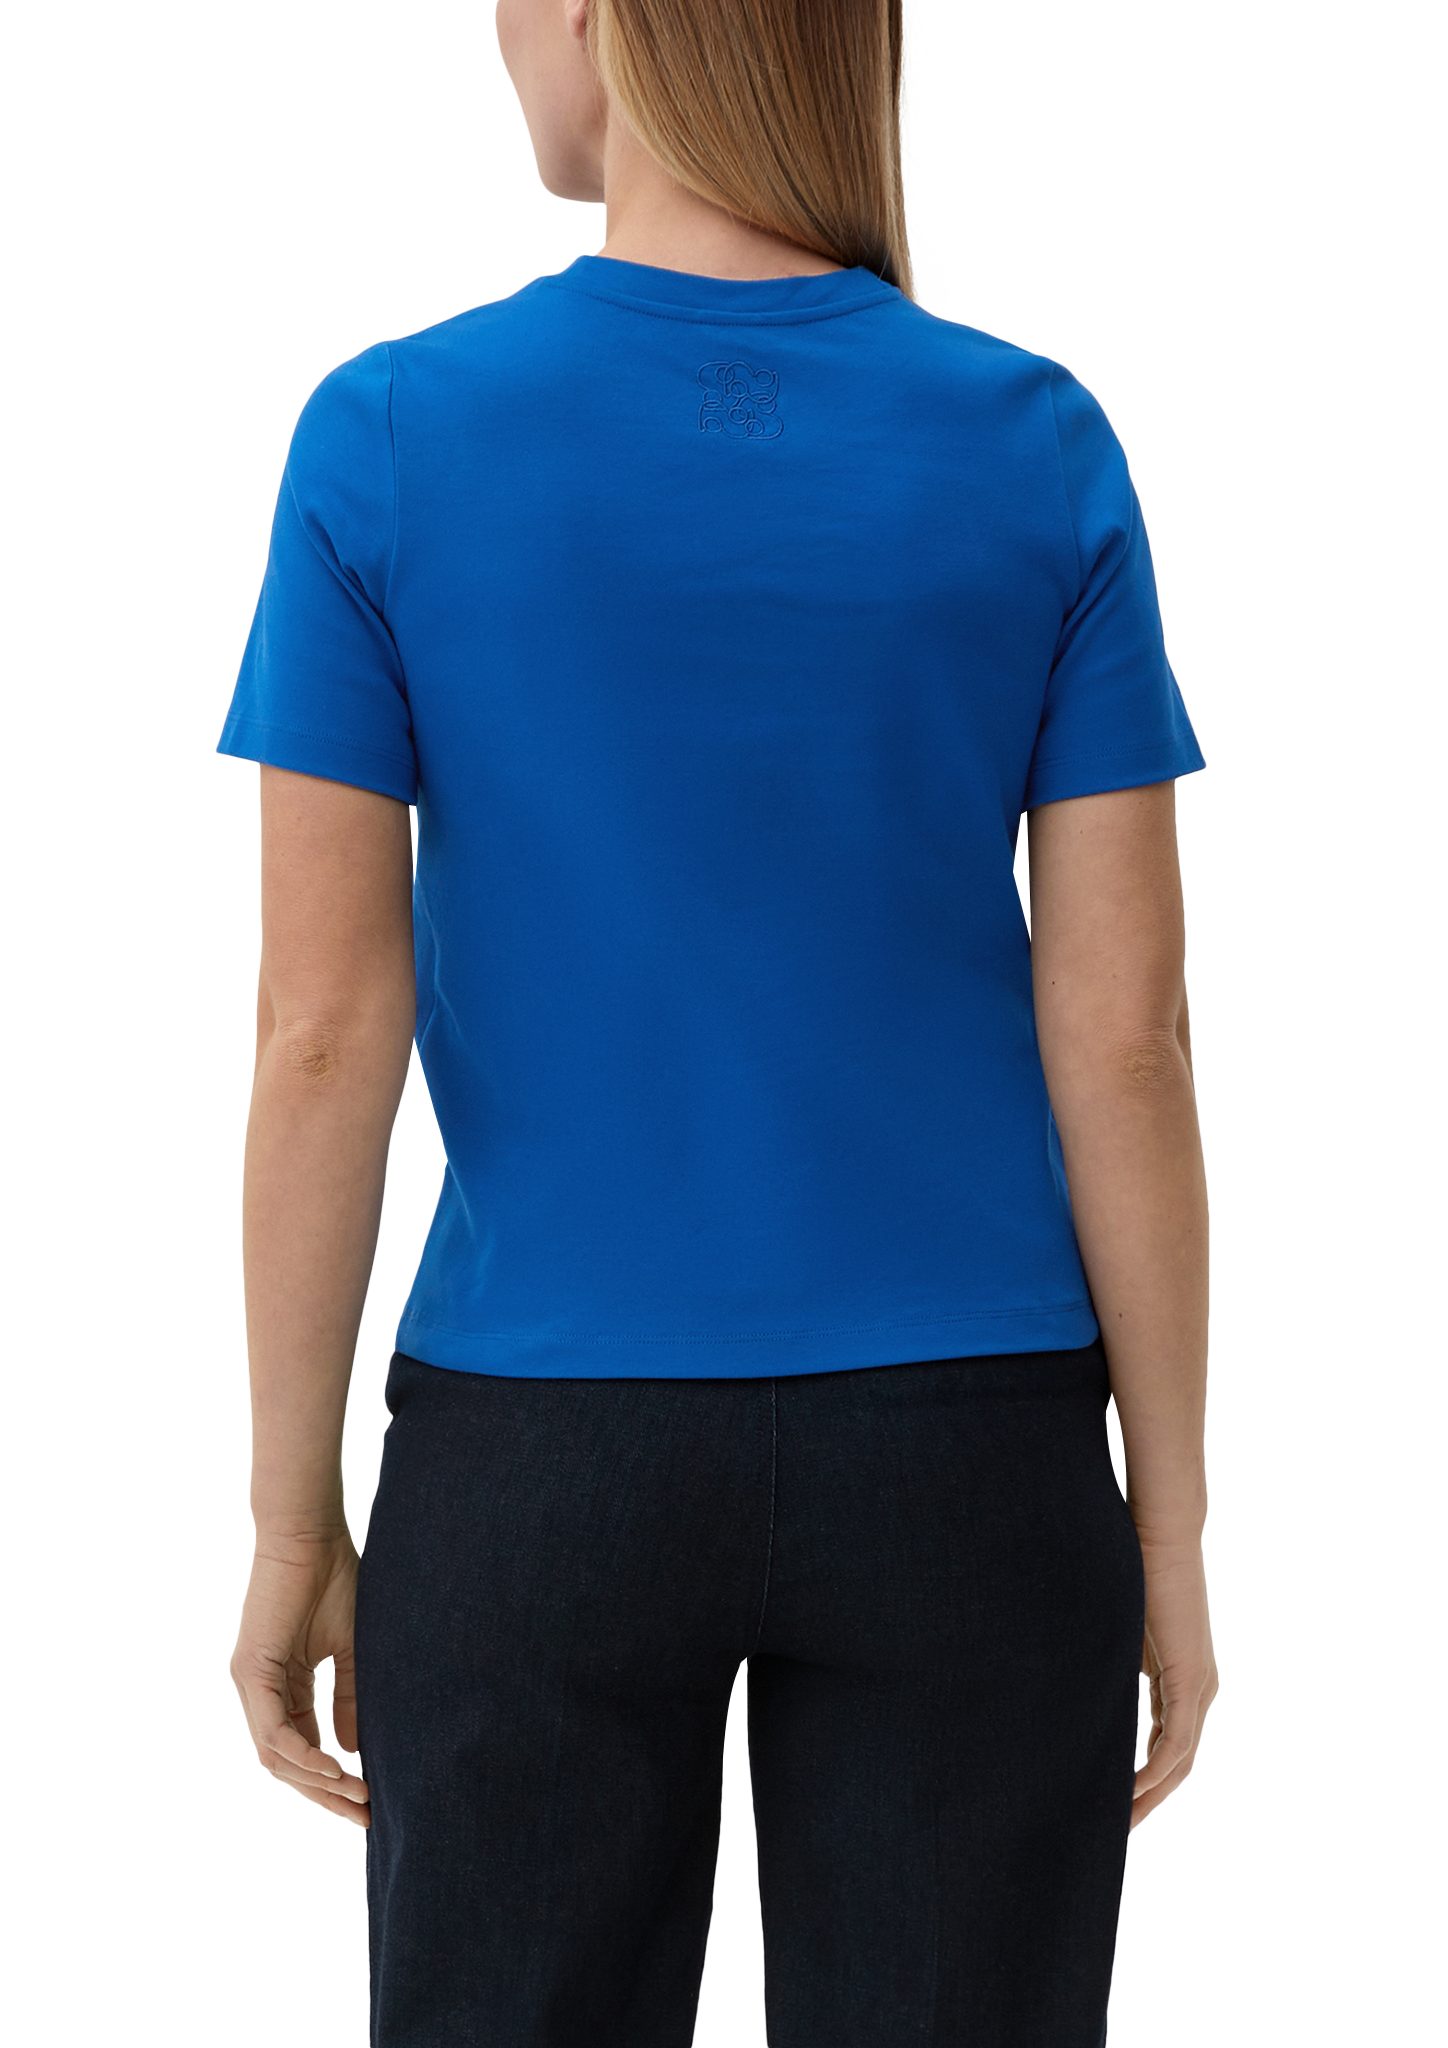 aus BLACK T-Shirt royalblau LABEL Baumwolle reiner Stickerei Kurzarmshirt s.Oliver